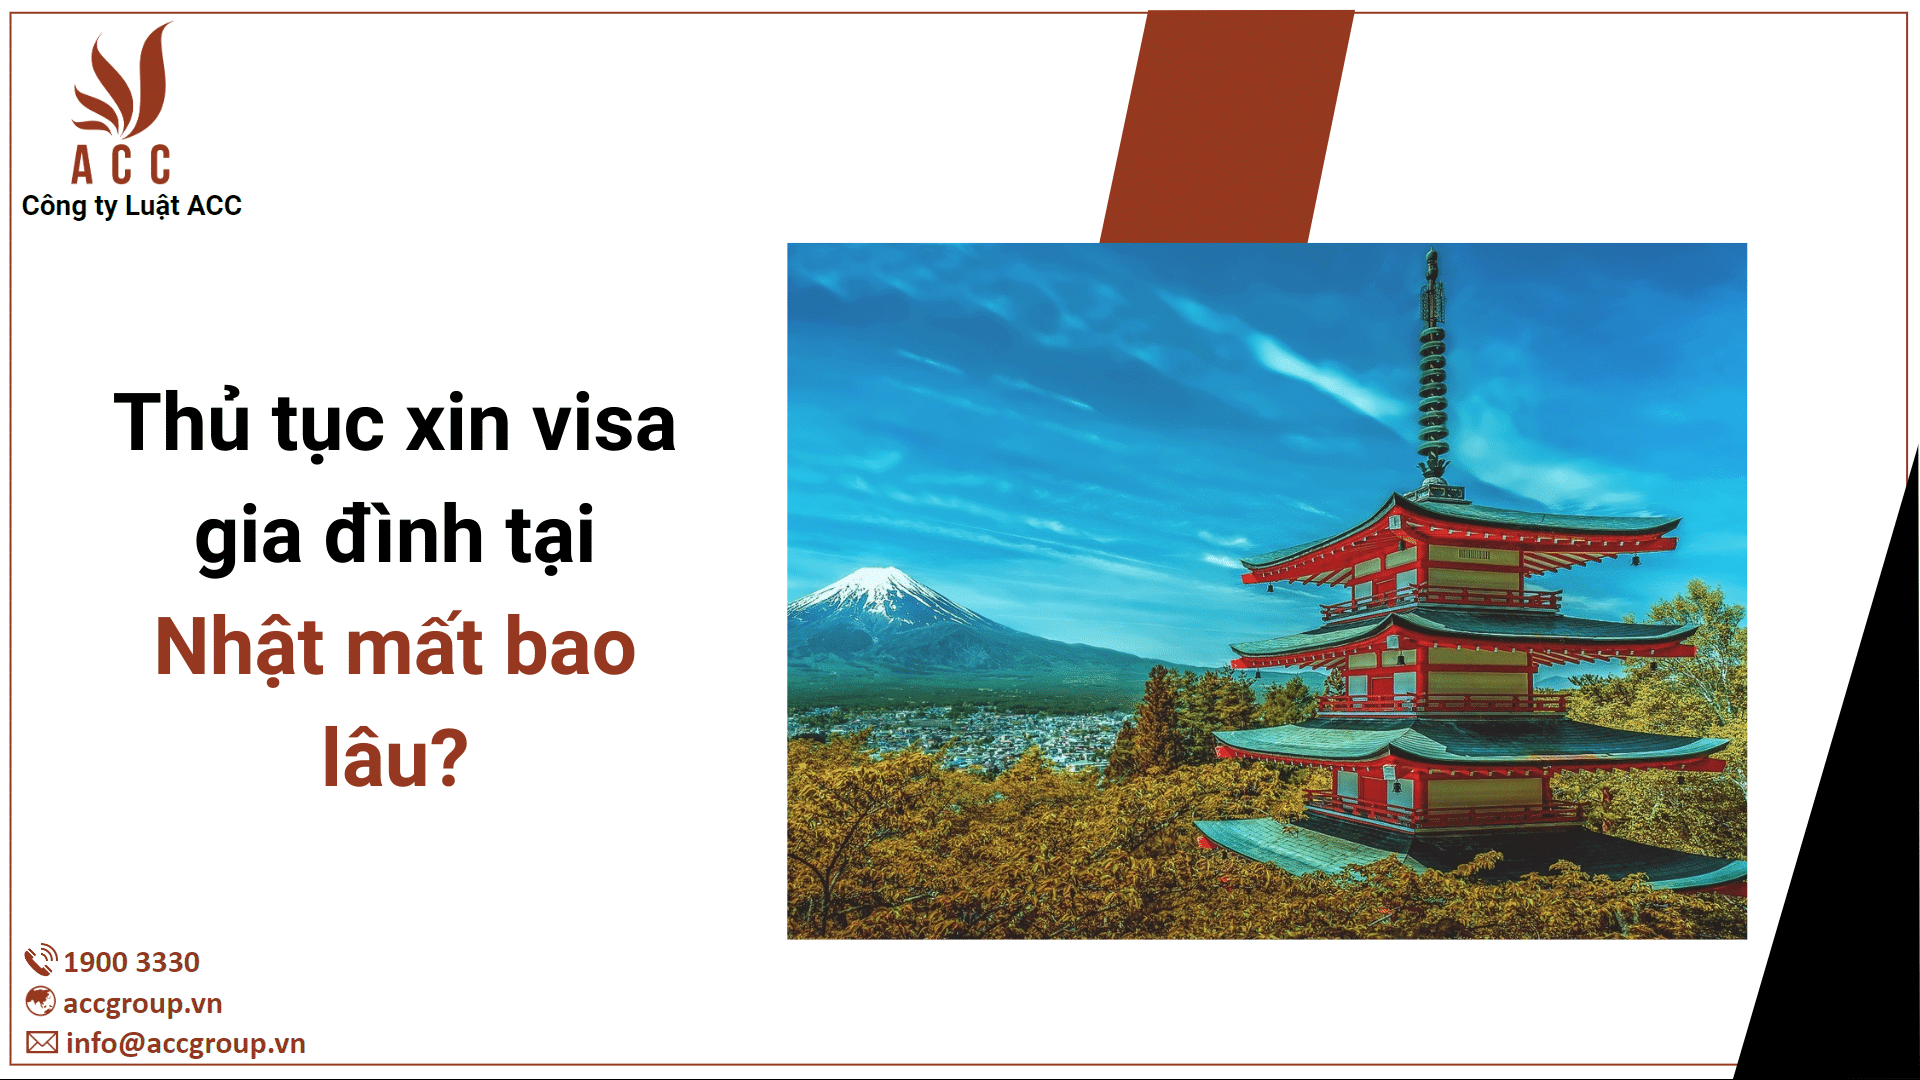 Thủ tục xin visa gia đình tại Nhật mất bao lâu?